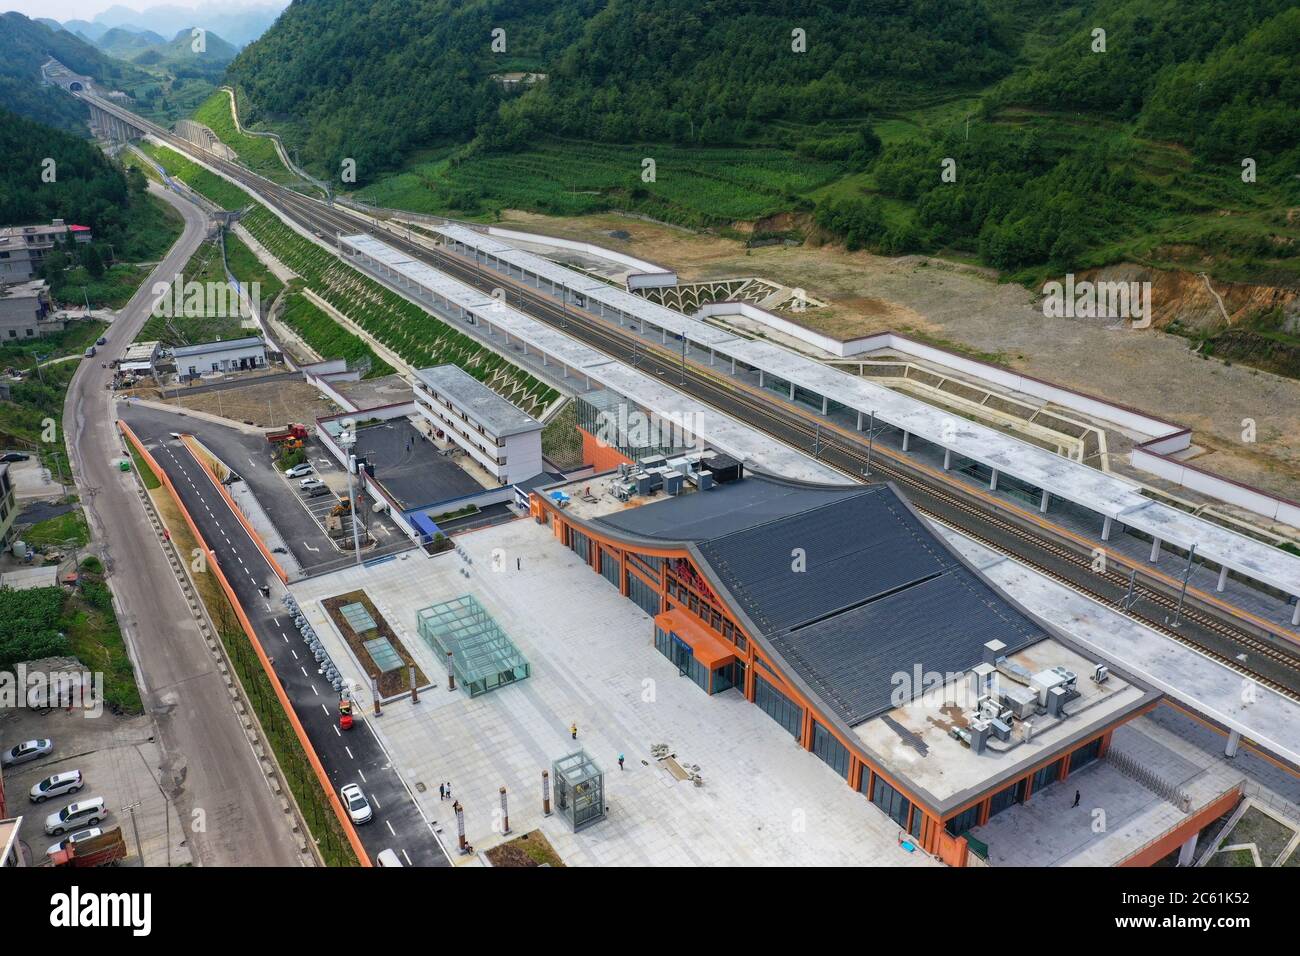 Liupanshui. Juli 2020. Luftaufnahme vom 6. Juli 2020 zeigt den Bahnhof Lengba entlang der Anshun-Liupanshui-Eisenbahn in der südwestlichen chinesischen Provinz Guizhou. Die Intercity-Bahn Anshun-Liupanshui mit einer Geschwindigkeit von 250 km/h wird zur Eröffnung vorbereitet. Die Eisenbahn wird die Fahrzeit zwischen Guiyang und Liupanshui von den aktuellen 3.5 Stunden auf etwa 1 Stunde verkürzen, und Liupanshui City wird vollständig mit dem nationalen Hochgeschwindigkeitsbahnnetz verbunden sein. Quelle: Liu Xu/Xinhua/Alamy Live News Stockfoto